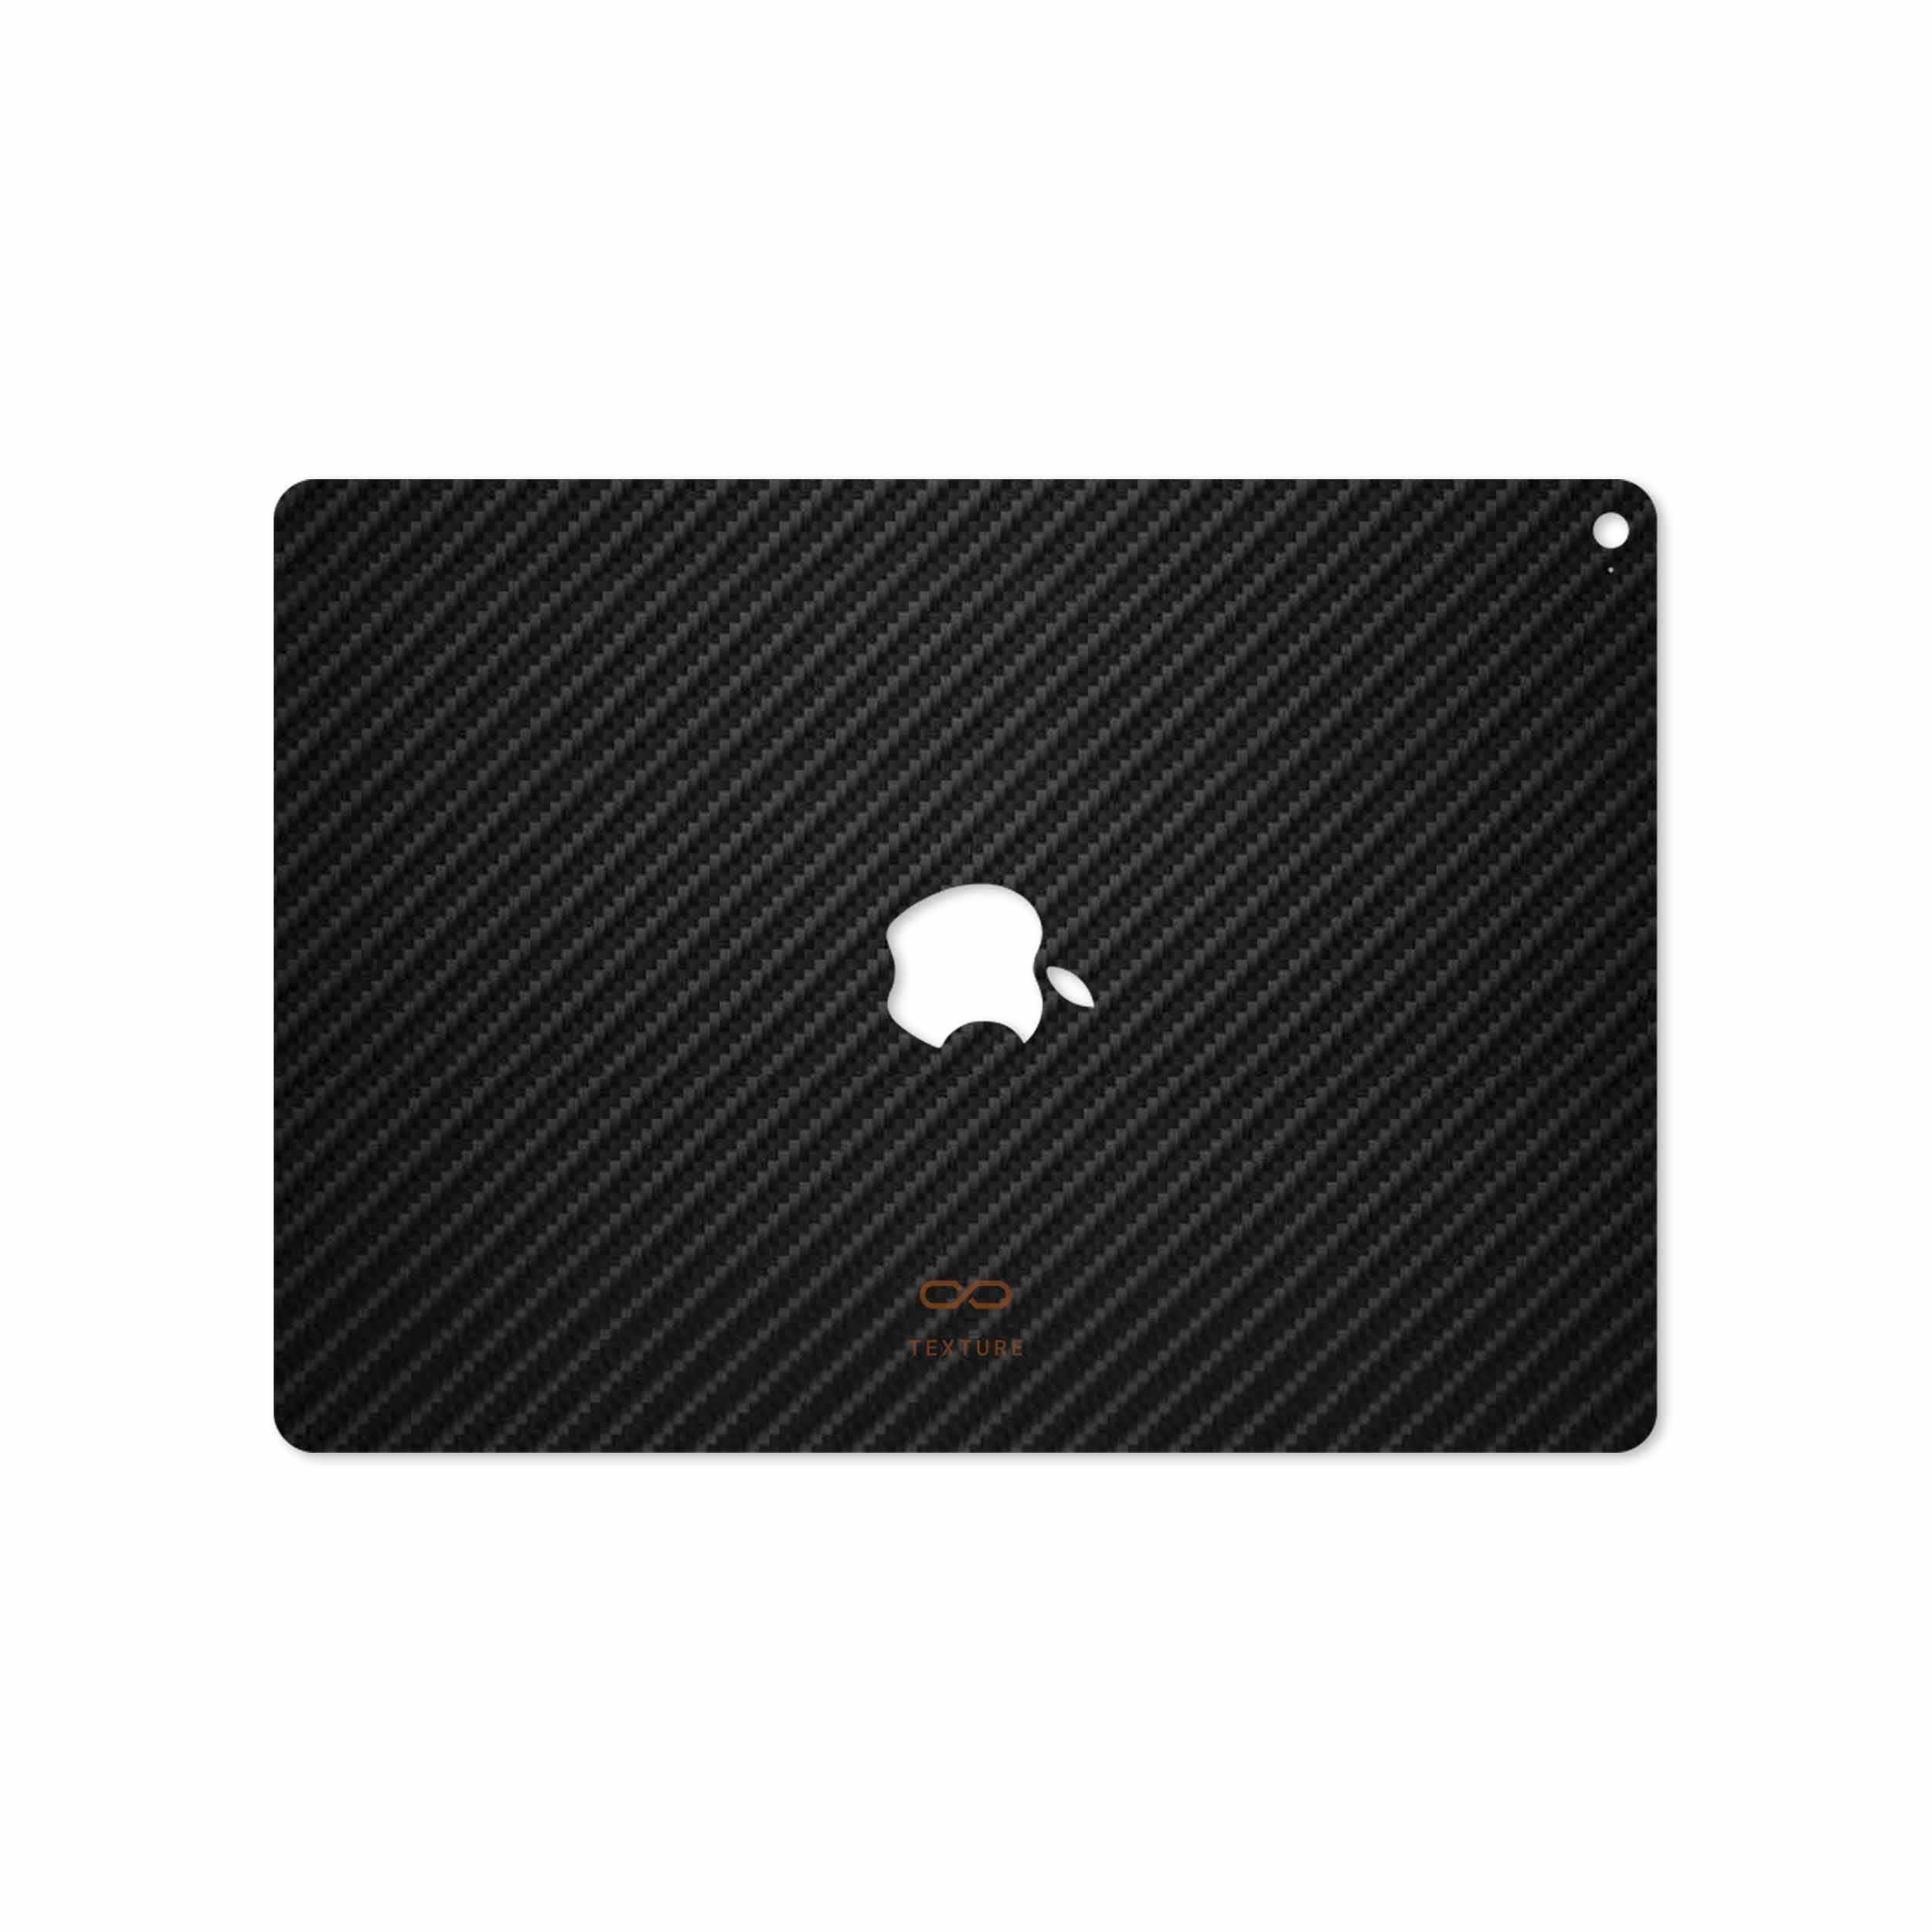 برچسب پوششی ماهوت مدل Carbon-Fiber مناسب برای تبلت اپل iPad Air 2 2014 A1566